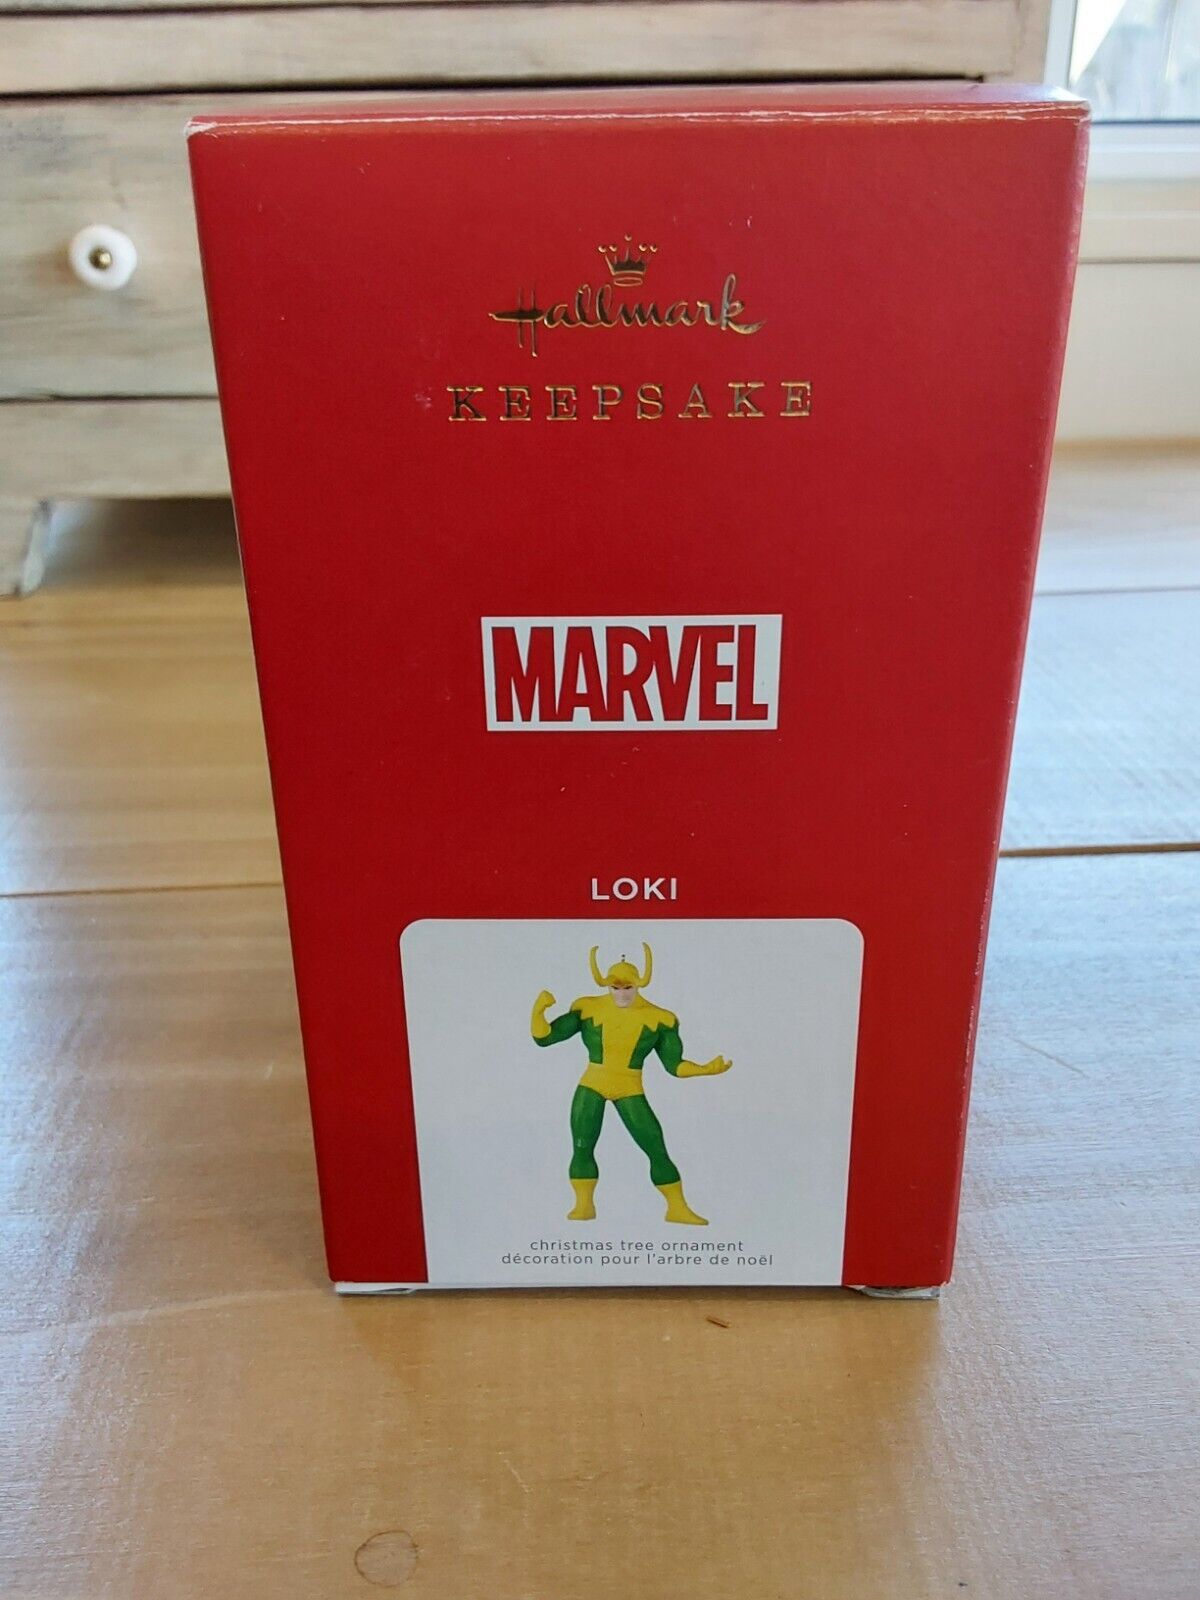 2021 Hallmark Keepsake Ornament Loki Marvel Comics